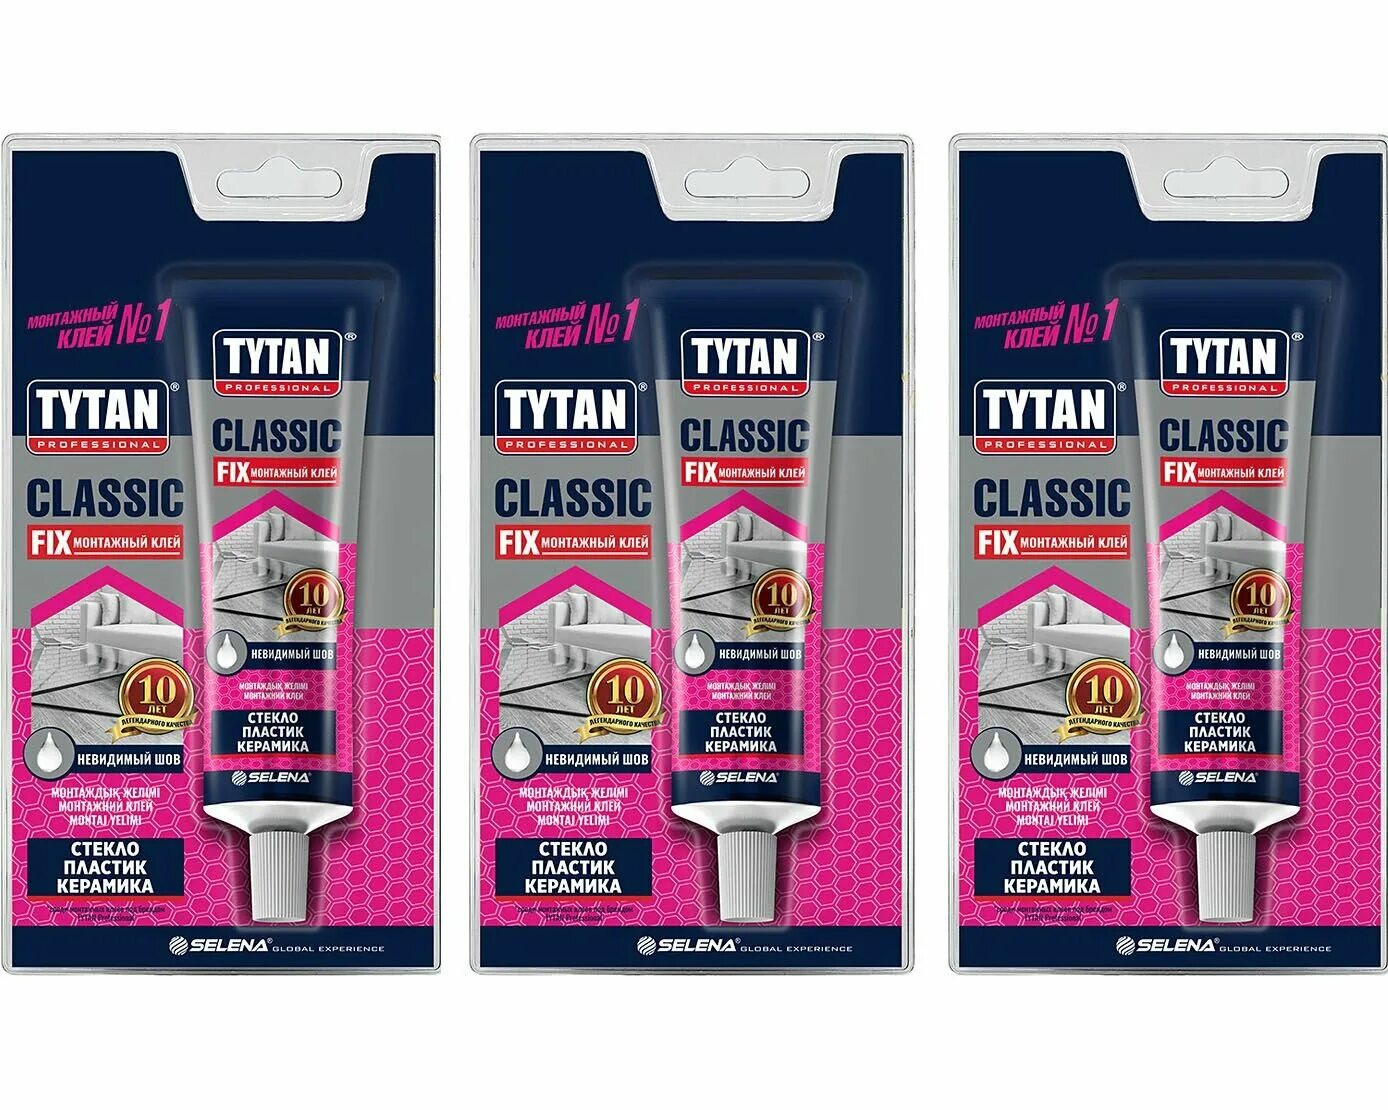 Tytan fix прозрачный. Клей монтажный Tytan Classic Fix, 100 мл. Tytan professional Classic Fix клей монтажный прозрачный, 310. Tytan Classic Fix монтажный клей. Монтажный клей Титан профессионал Классик фикс.